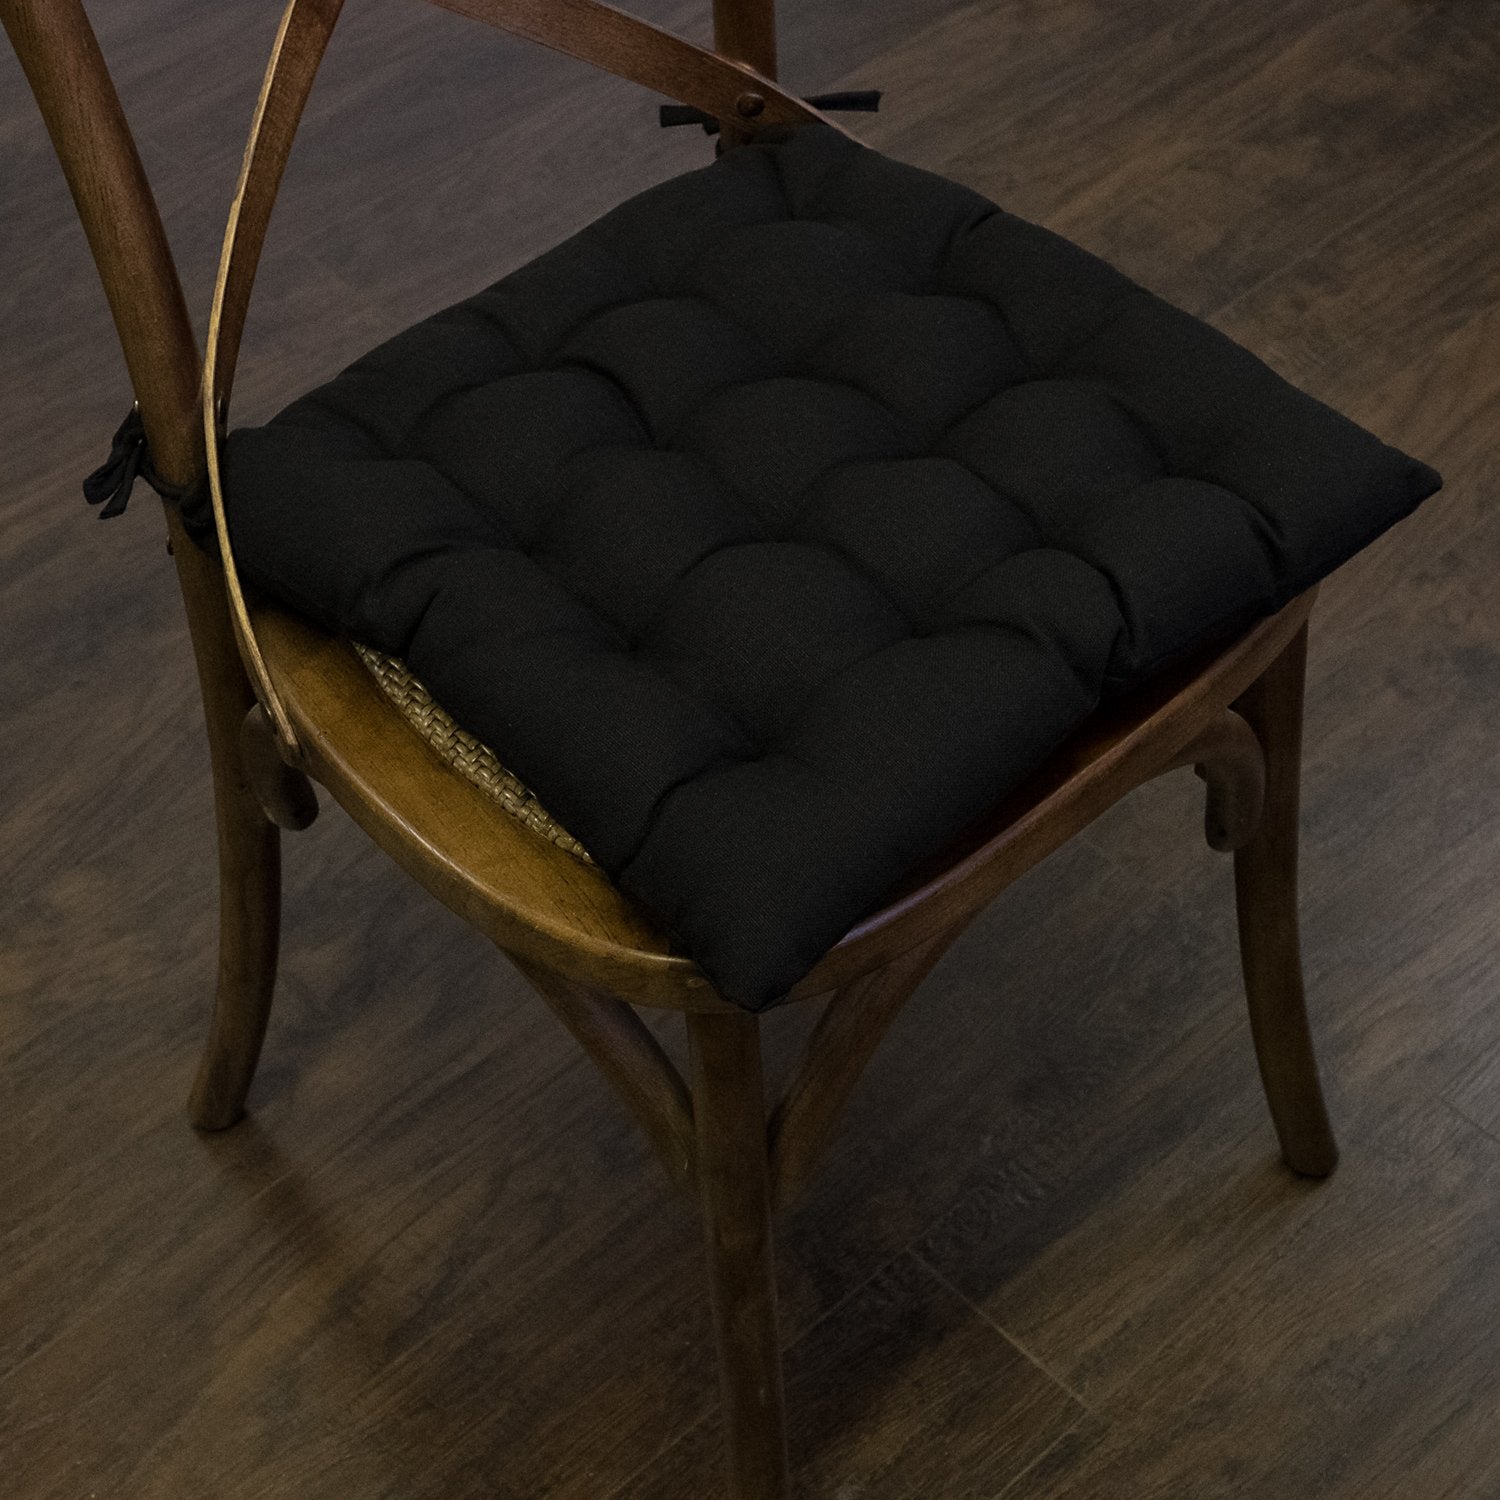 Tufted Chair Cushion Set 16 By 16 Black - Chair